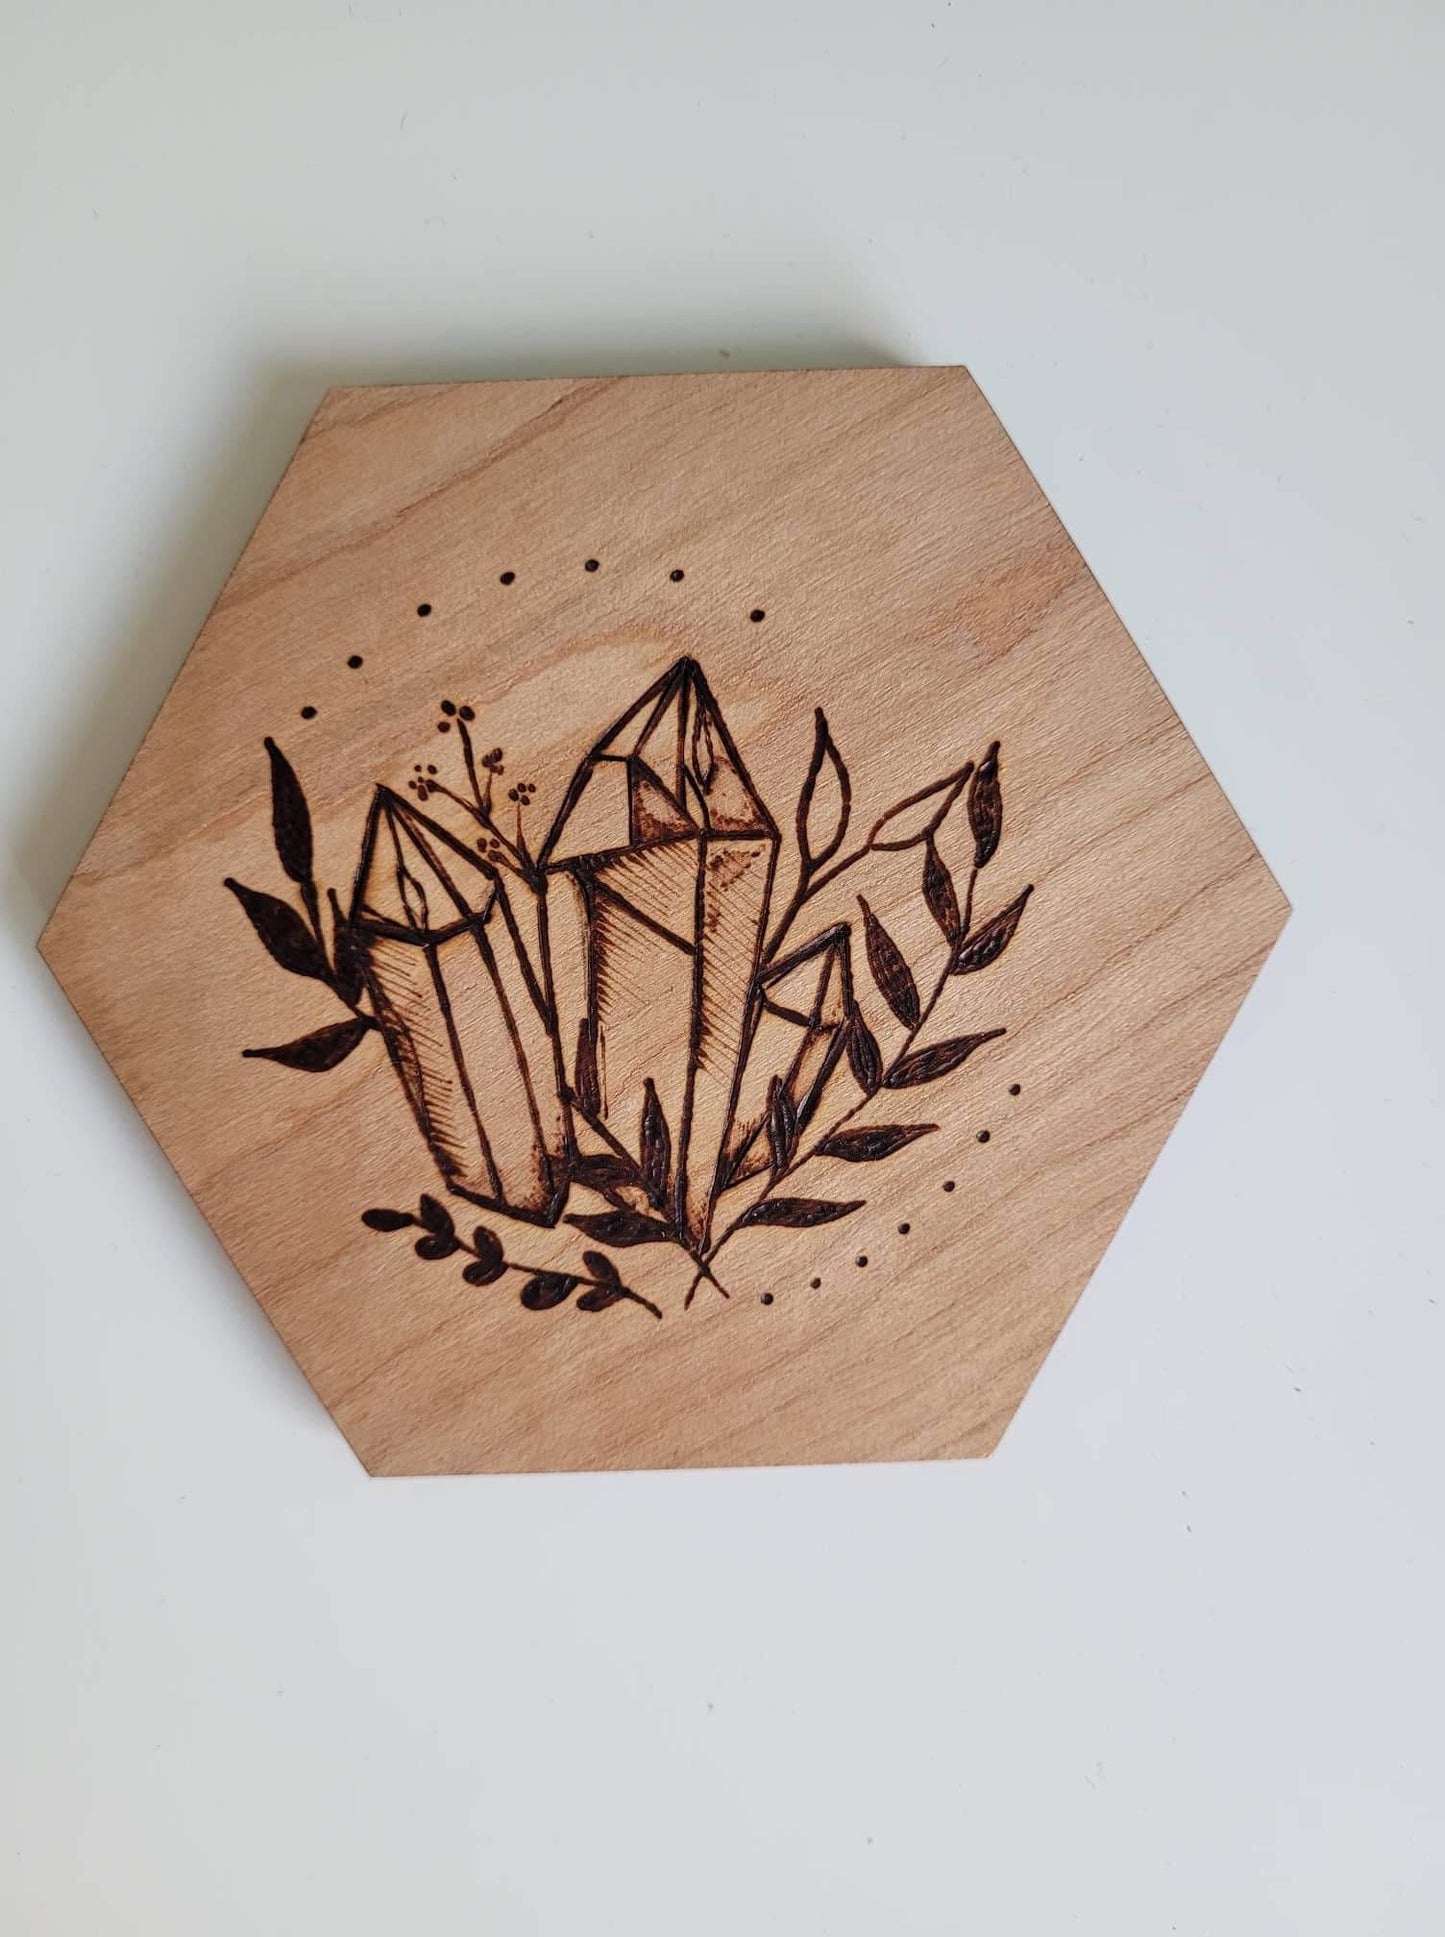 Sous-verre en bois avec gravures de cristaux et feuillages, fait à la main